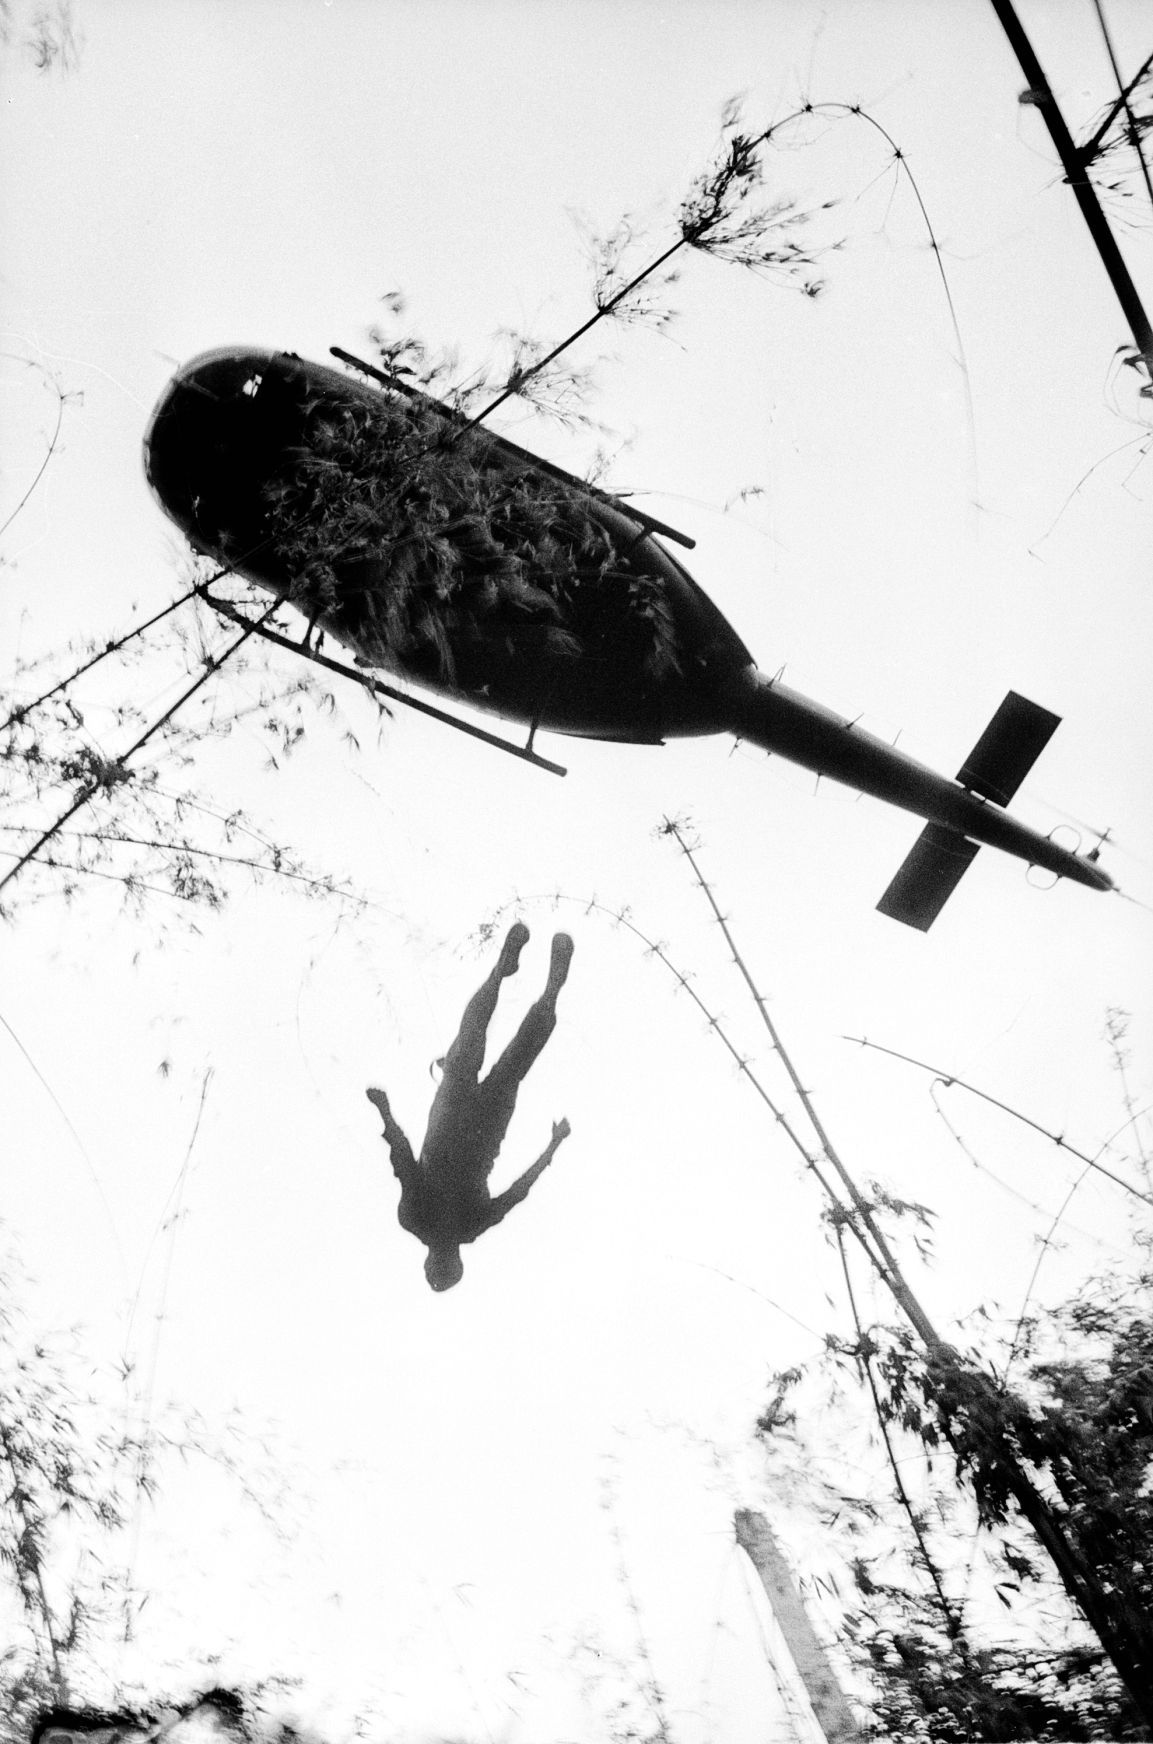 Jednorázové užití / Fotografie z války ve Vietnamu / ČTK